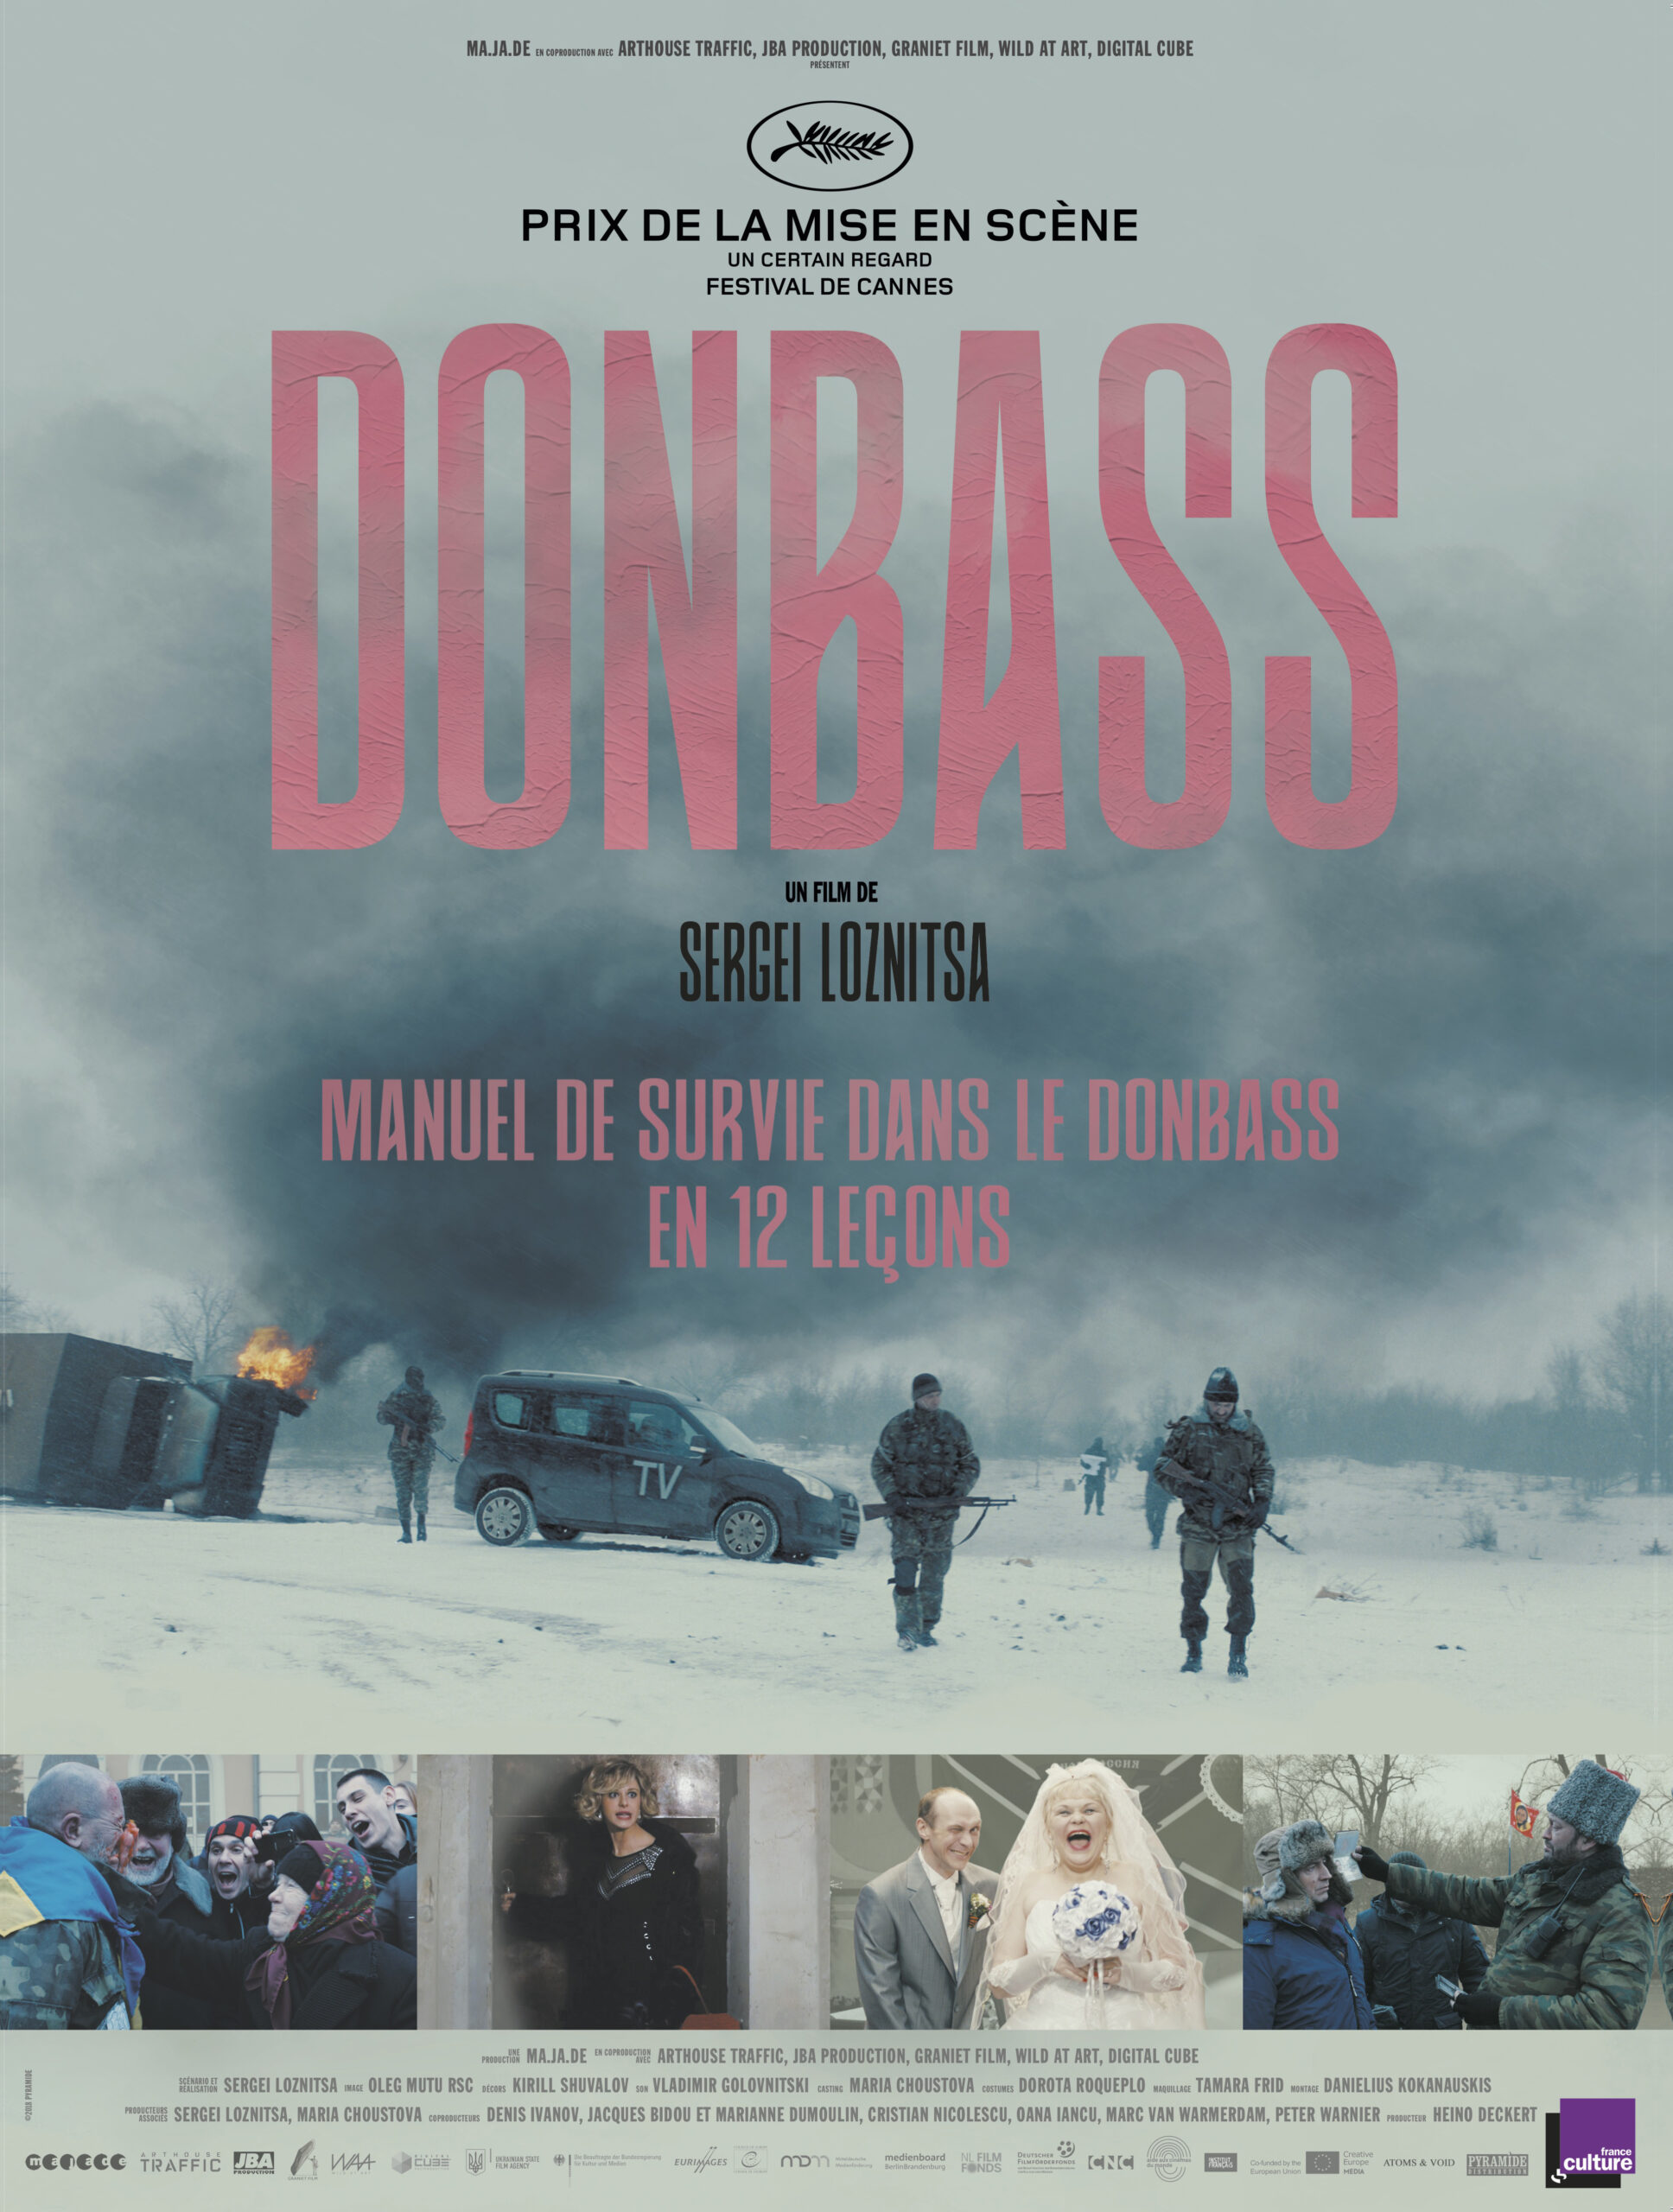 セルゲイ・ロズニツァ監督作品『ドンバス』2日限定緊急上映